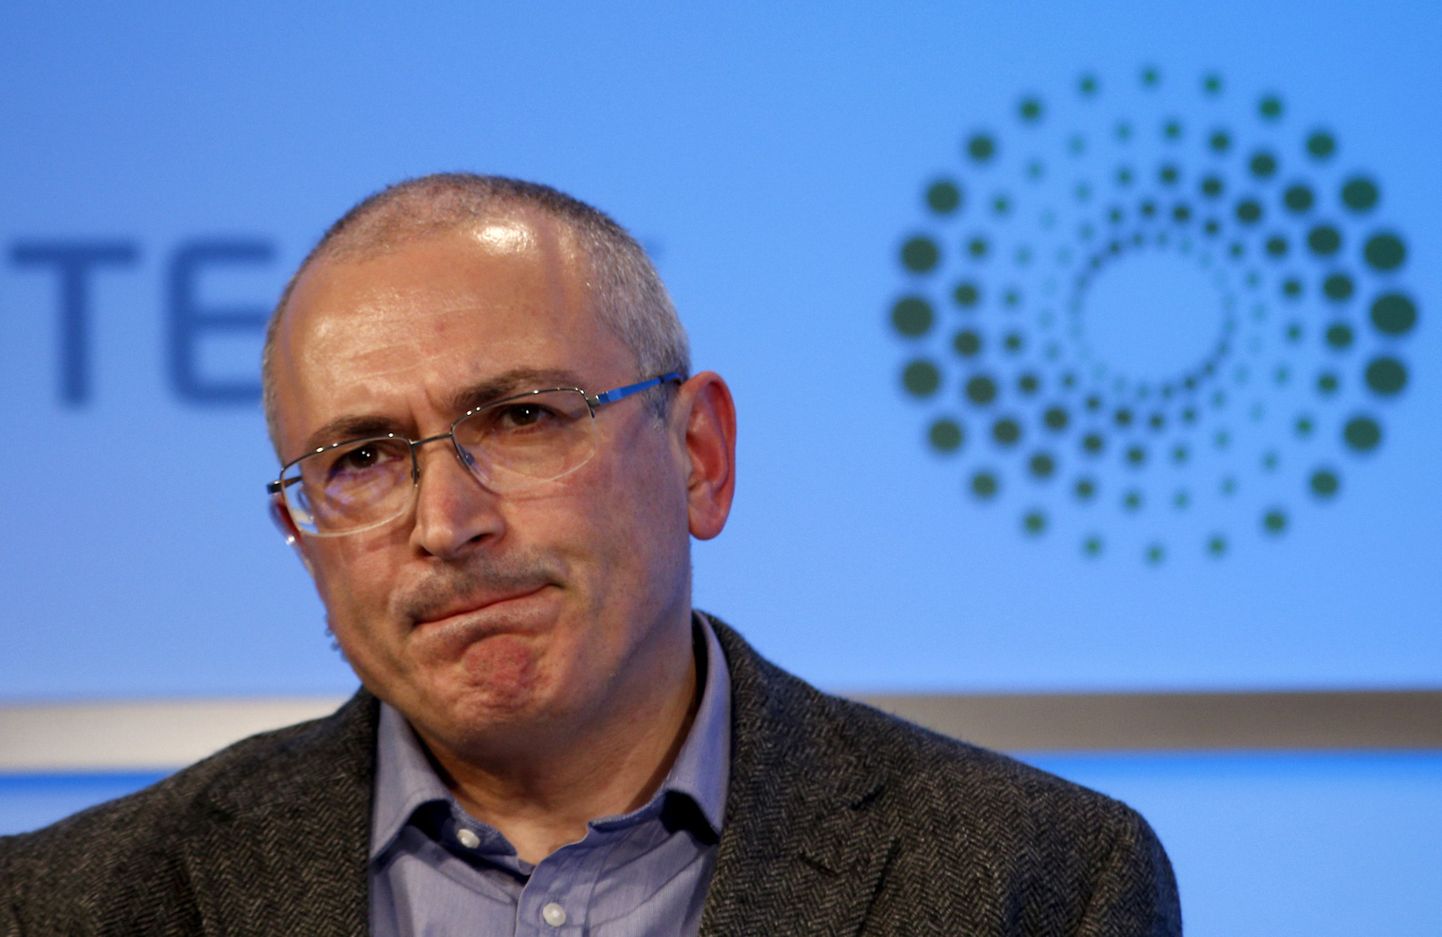 Mihhail Hodorkovski